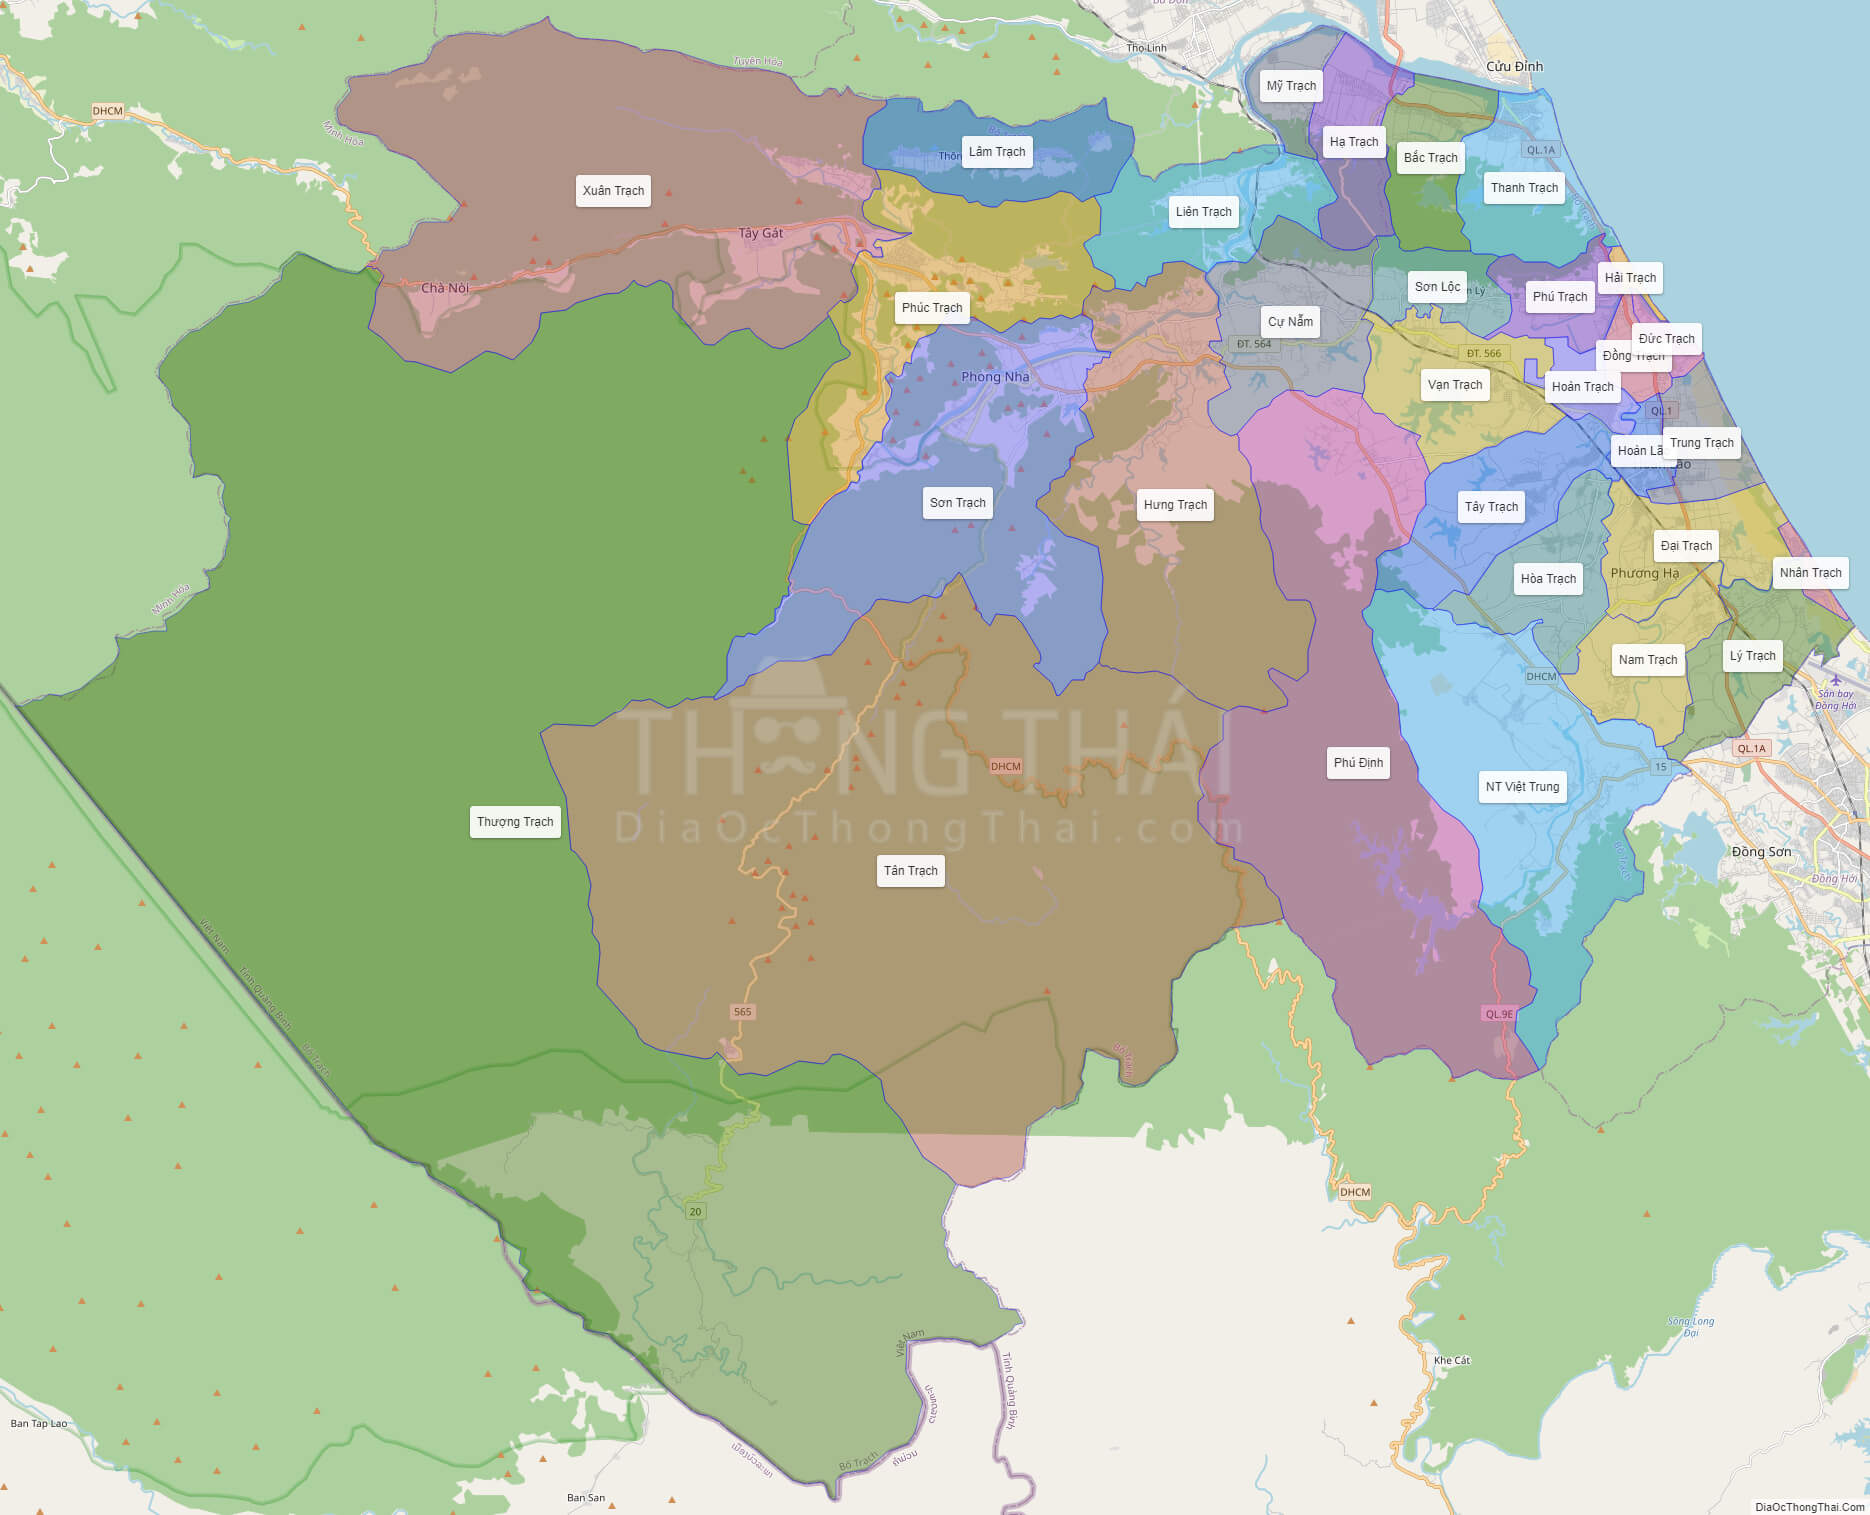 Bản đồ huyện Bố Trạch Quảng Bình: 
Bố Trạch là một huyện thuộc tỉnh Quảng Bình, với bản đồ mới cập nhật năm 2024, du khách có thể dễ dàng tìm hiểu và khám phá những điểm đến thú vị. Huyện này nổi tiếng với các thắng cảnh đẹp như Hang Vọng, Chùa Thiên Mụ, Khu di tích cố đô Hoàng Châu. Đến đây, du khách sẽ được khám phá và trải nghiệm những điều tuyệt vời của miền Trung Việt Nam.